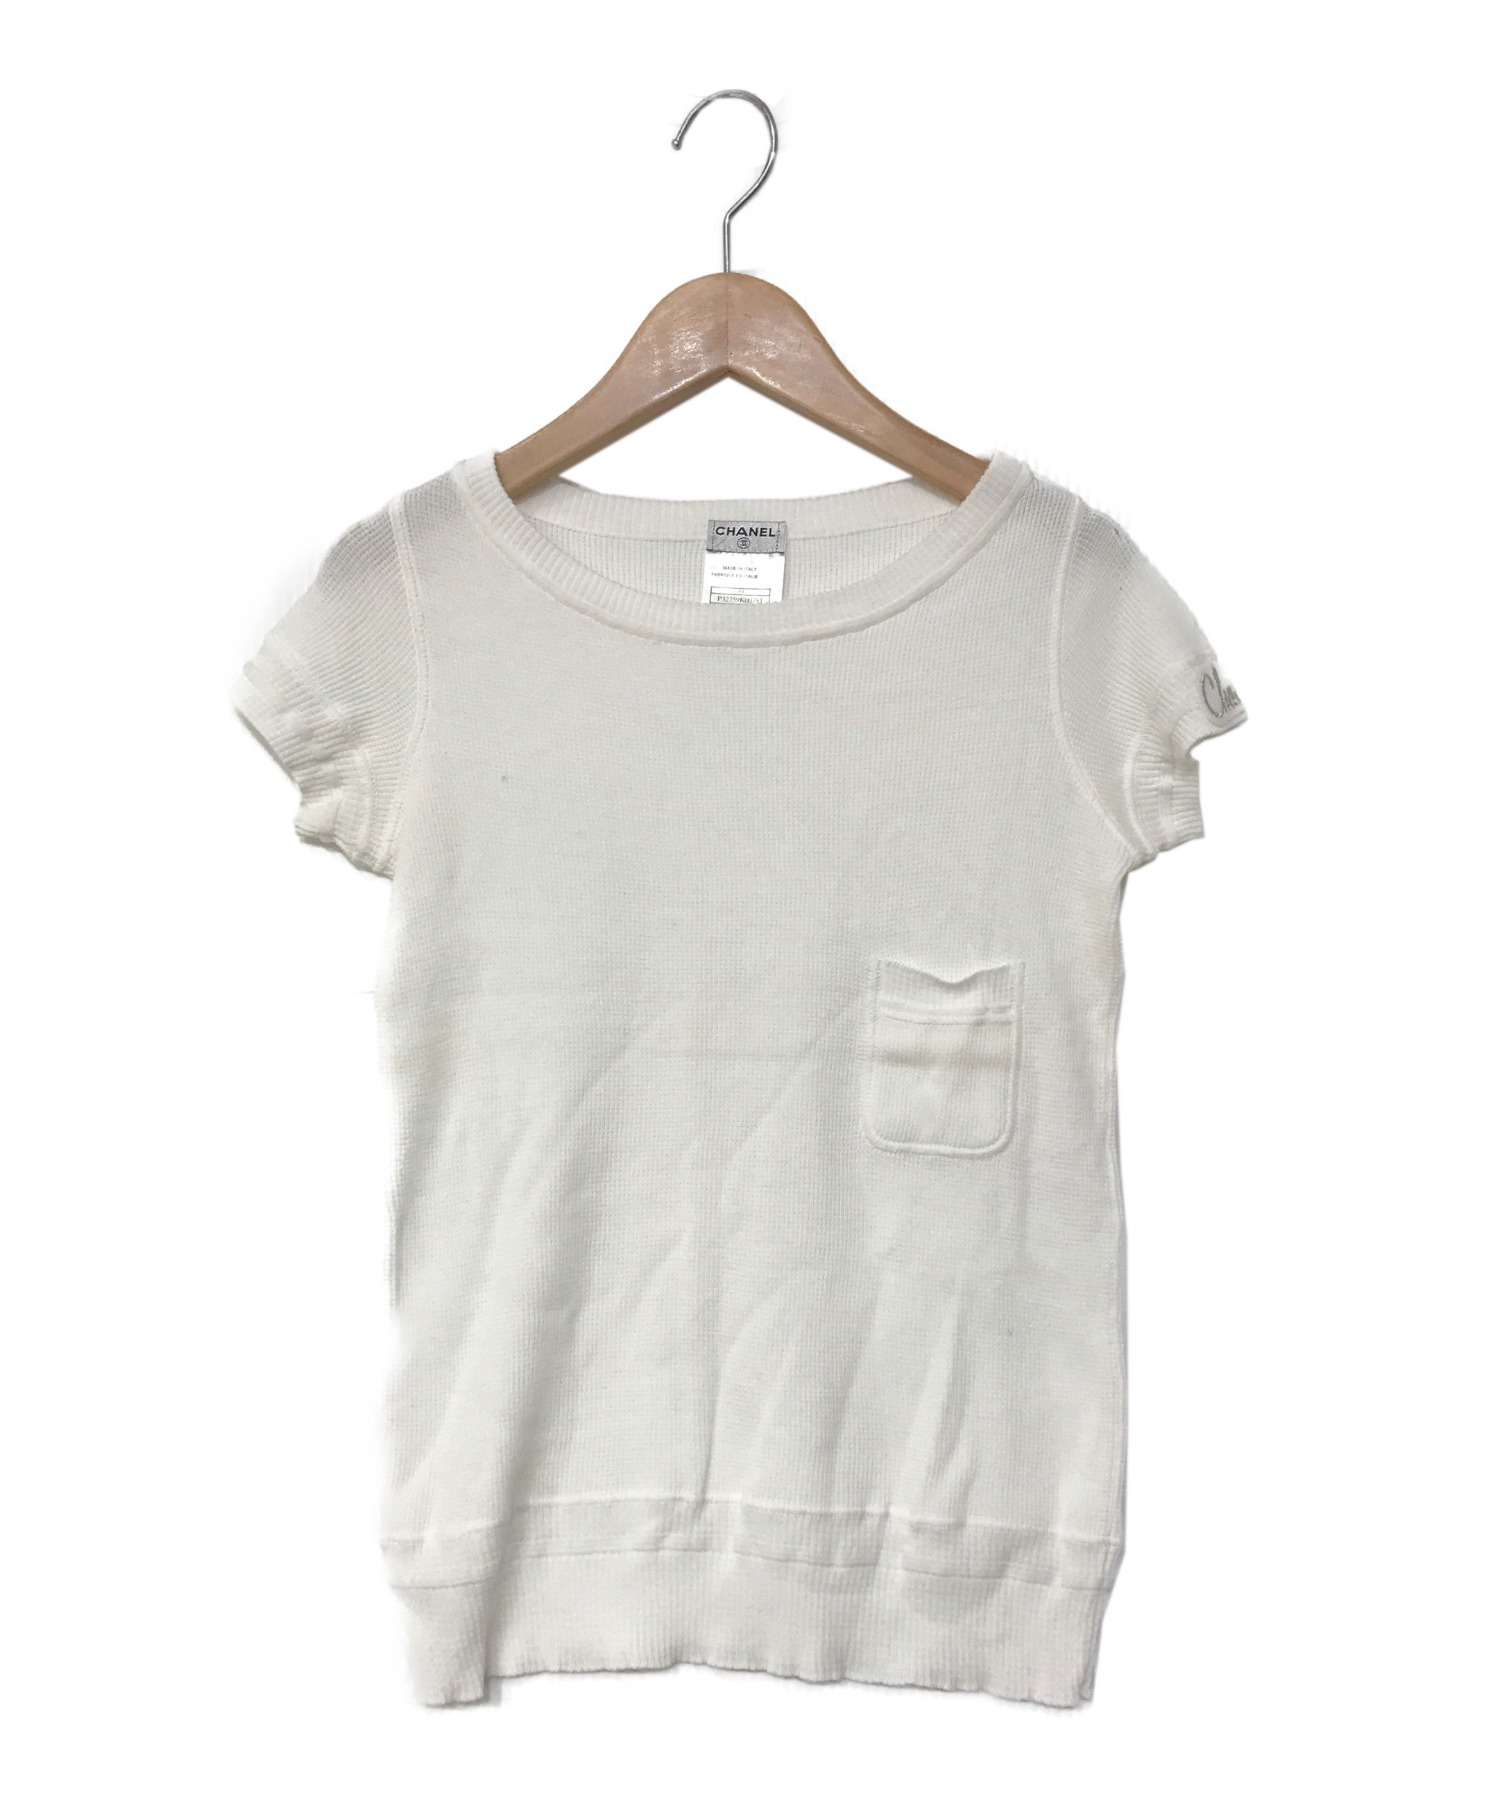 CHANEL (シャネル) Tシャツ ホワイト サイズ:34 08P